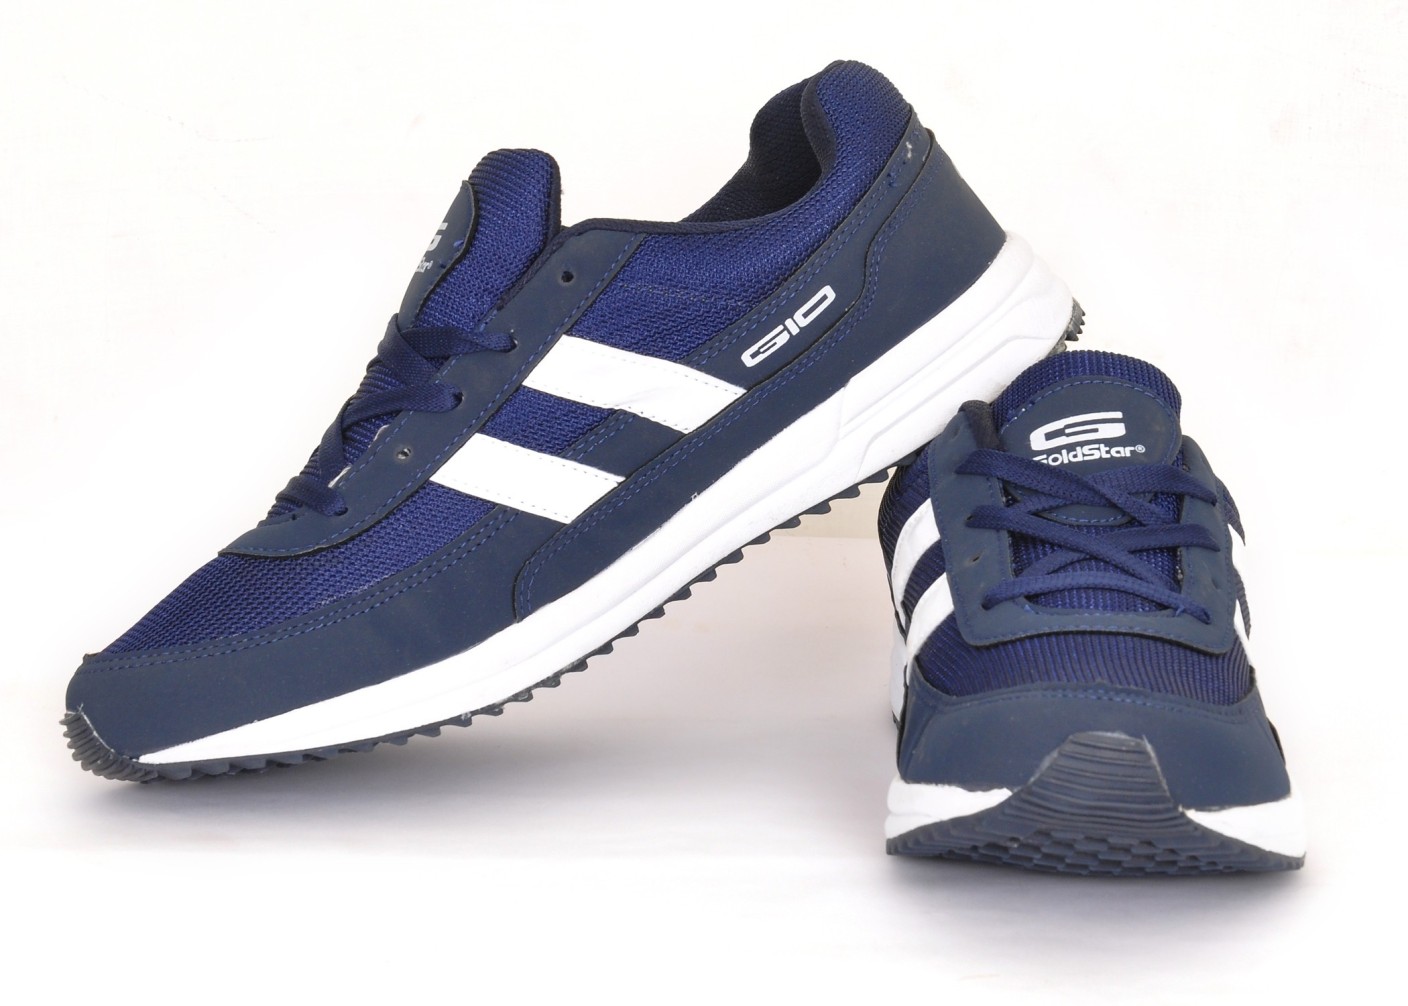 Goldstar G10 Running Shoes For Men - Buy Blue Color Goldstar G10 ...